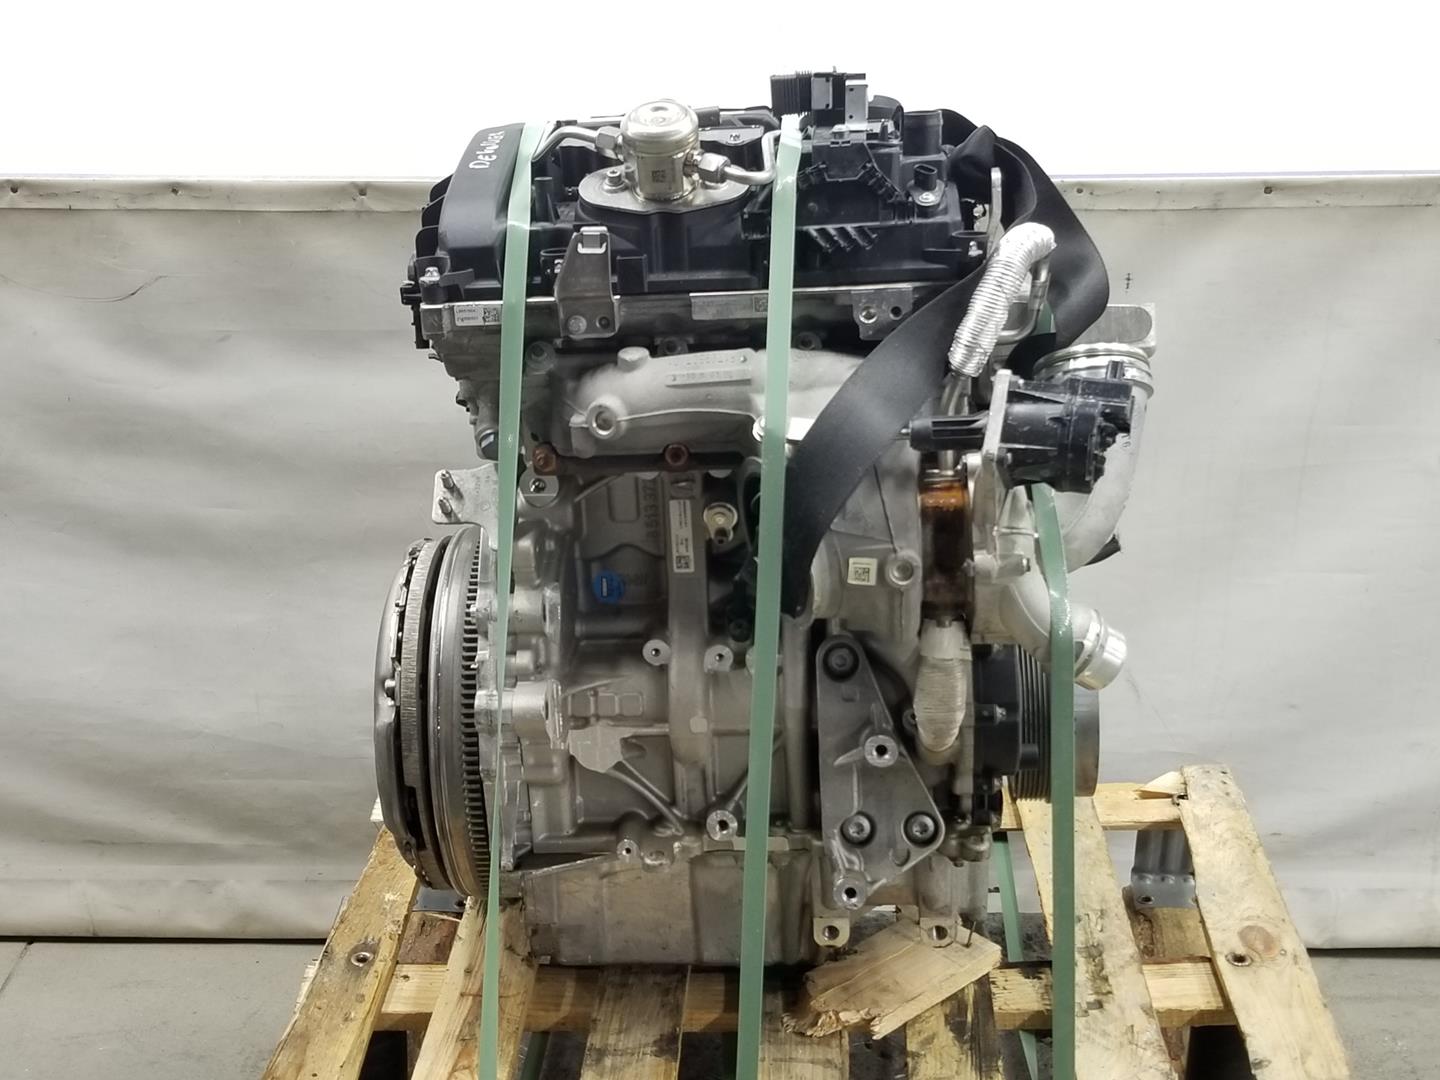 MINI Cooper R56 (2006-2015) Engine B38A15A, 11002455307 19787582